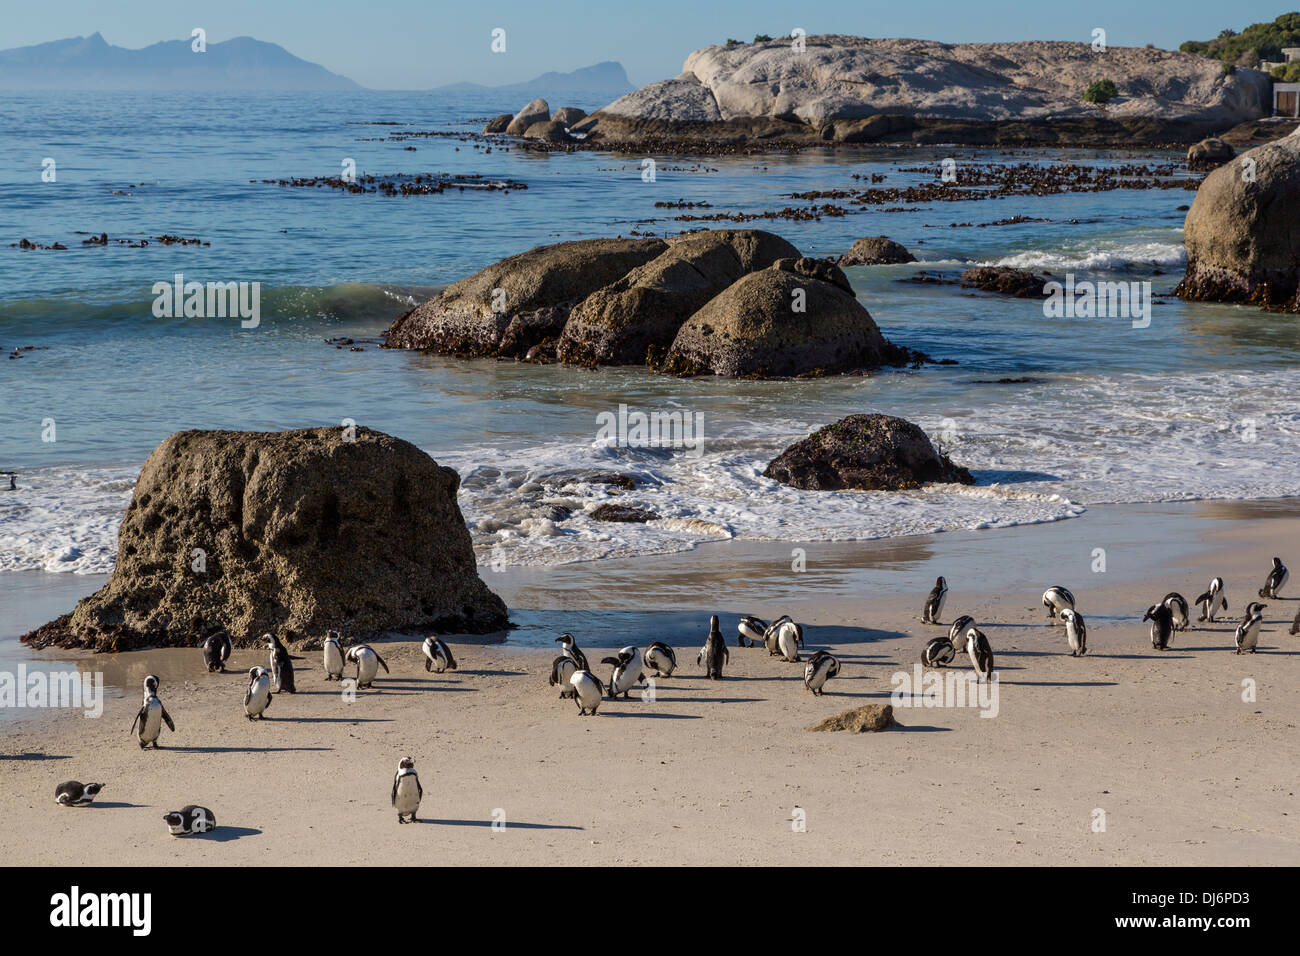 Südafrika. Afrikanische Pinguine am Boulders Beach in der Nähe von Simons Town, Western Cape Provinz. Stockfoto